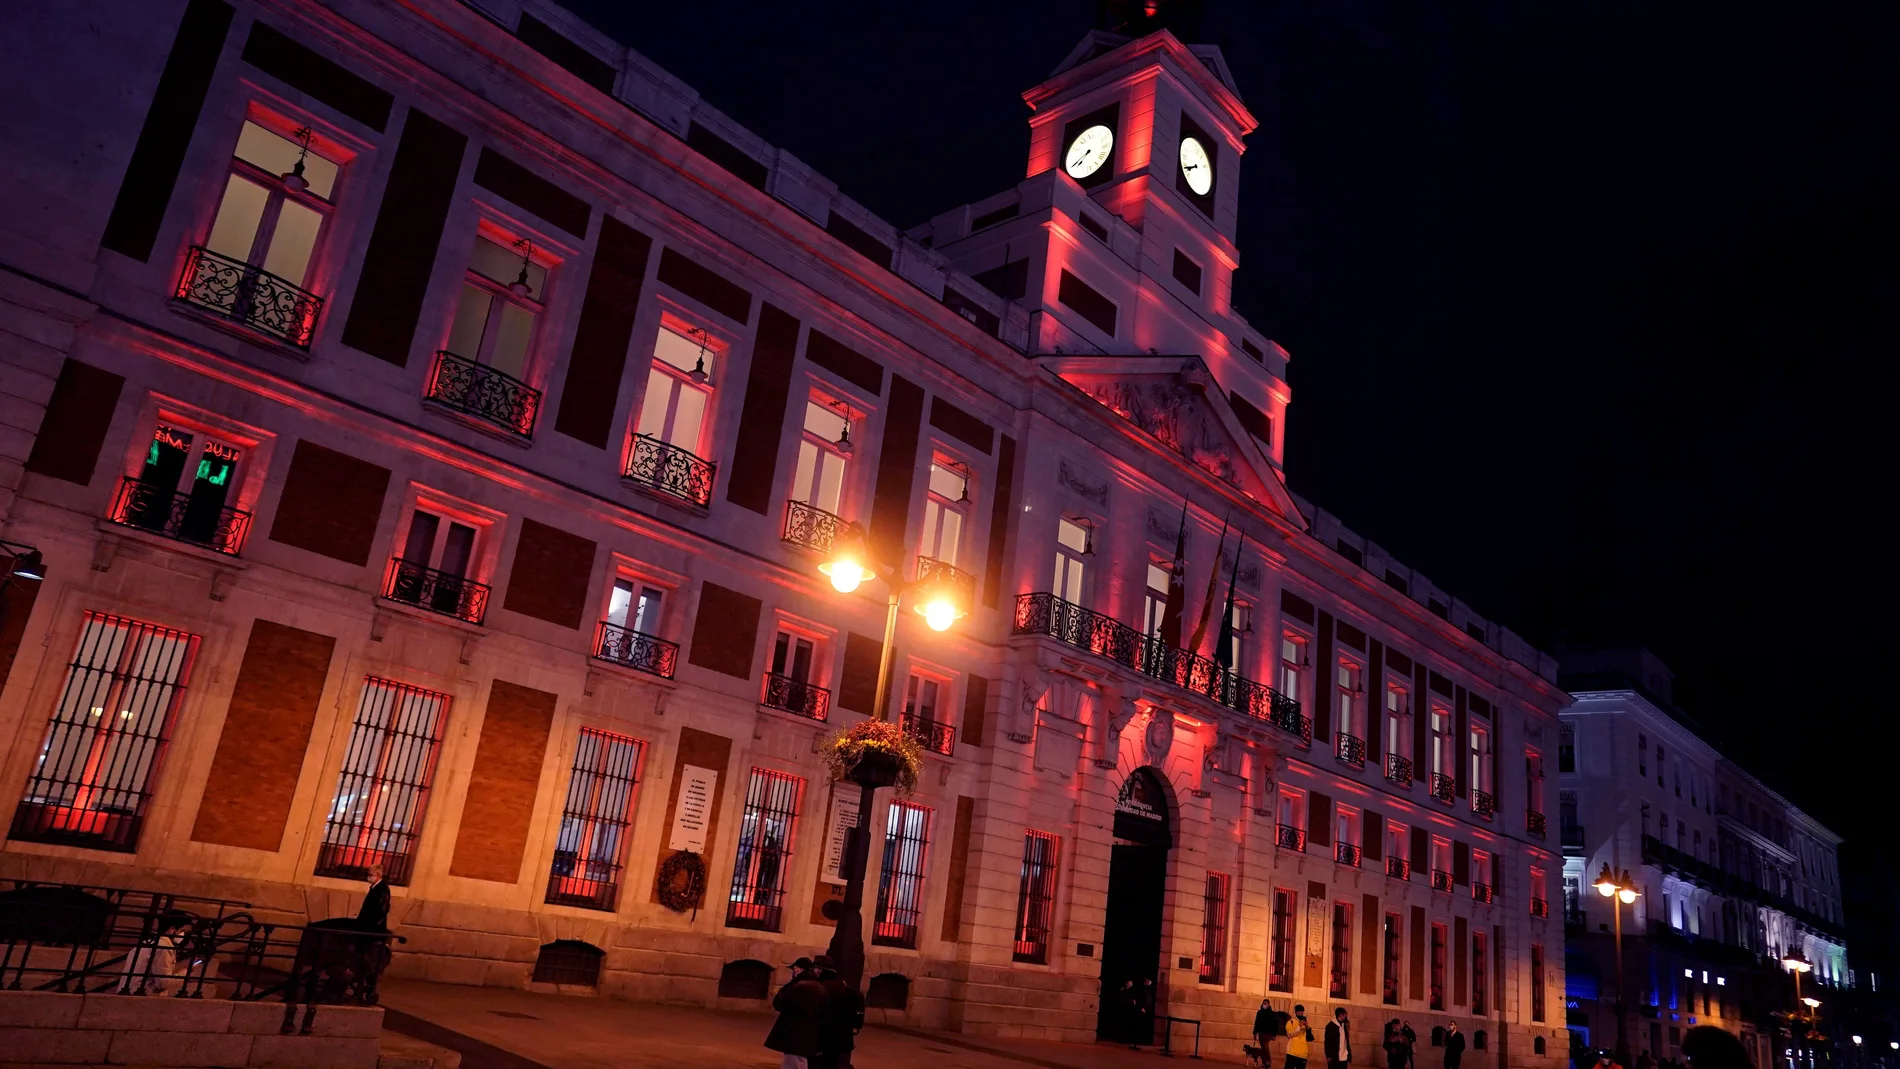 La Comunidad de Madrid ilumina de rojo este jueves la fachada de la Real Casa de Correos para dar la bienvenida al Año Nuevo Chino